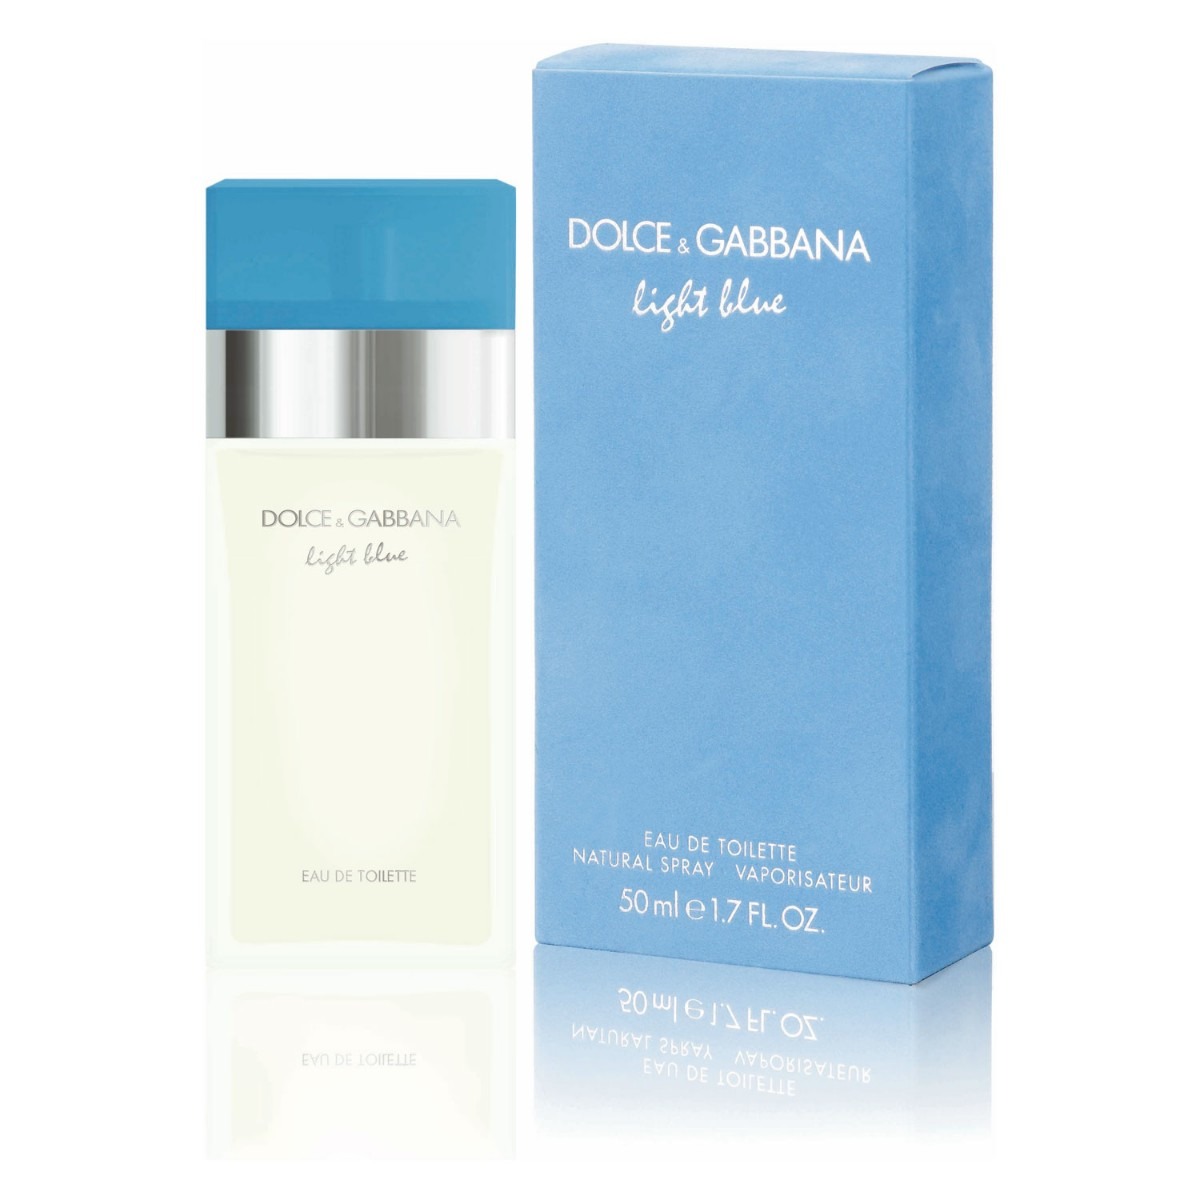 dolce gabbana women s eau de toilette spray light blue Pink clouds: dolce & gabbana light blue perfume